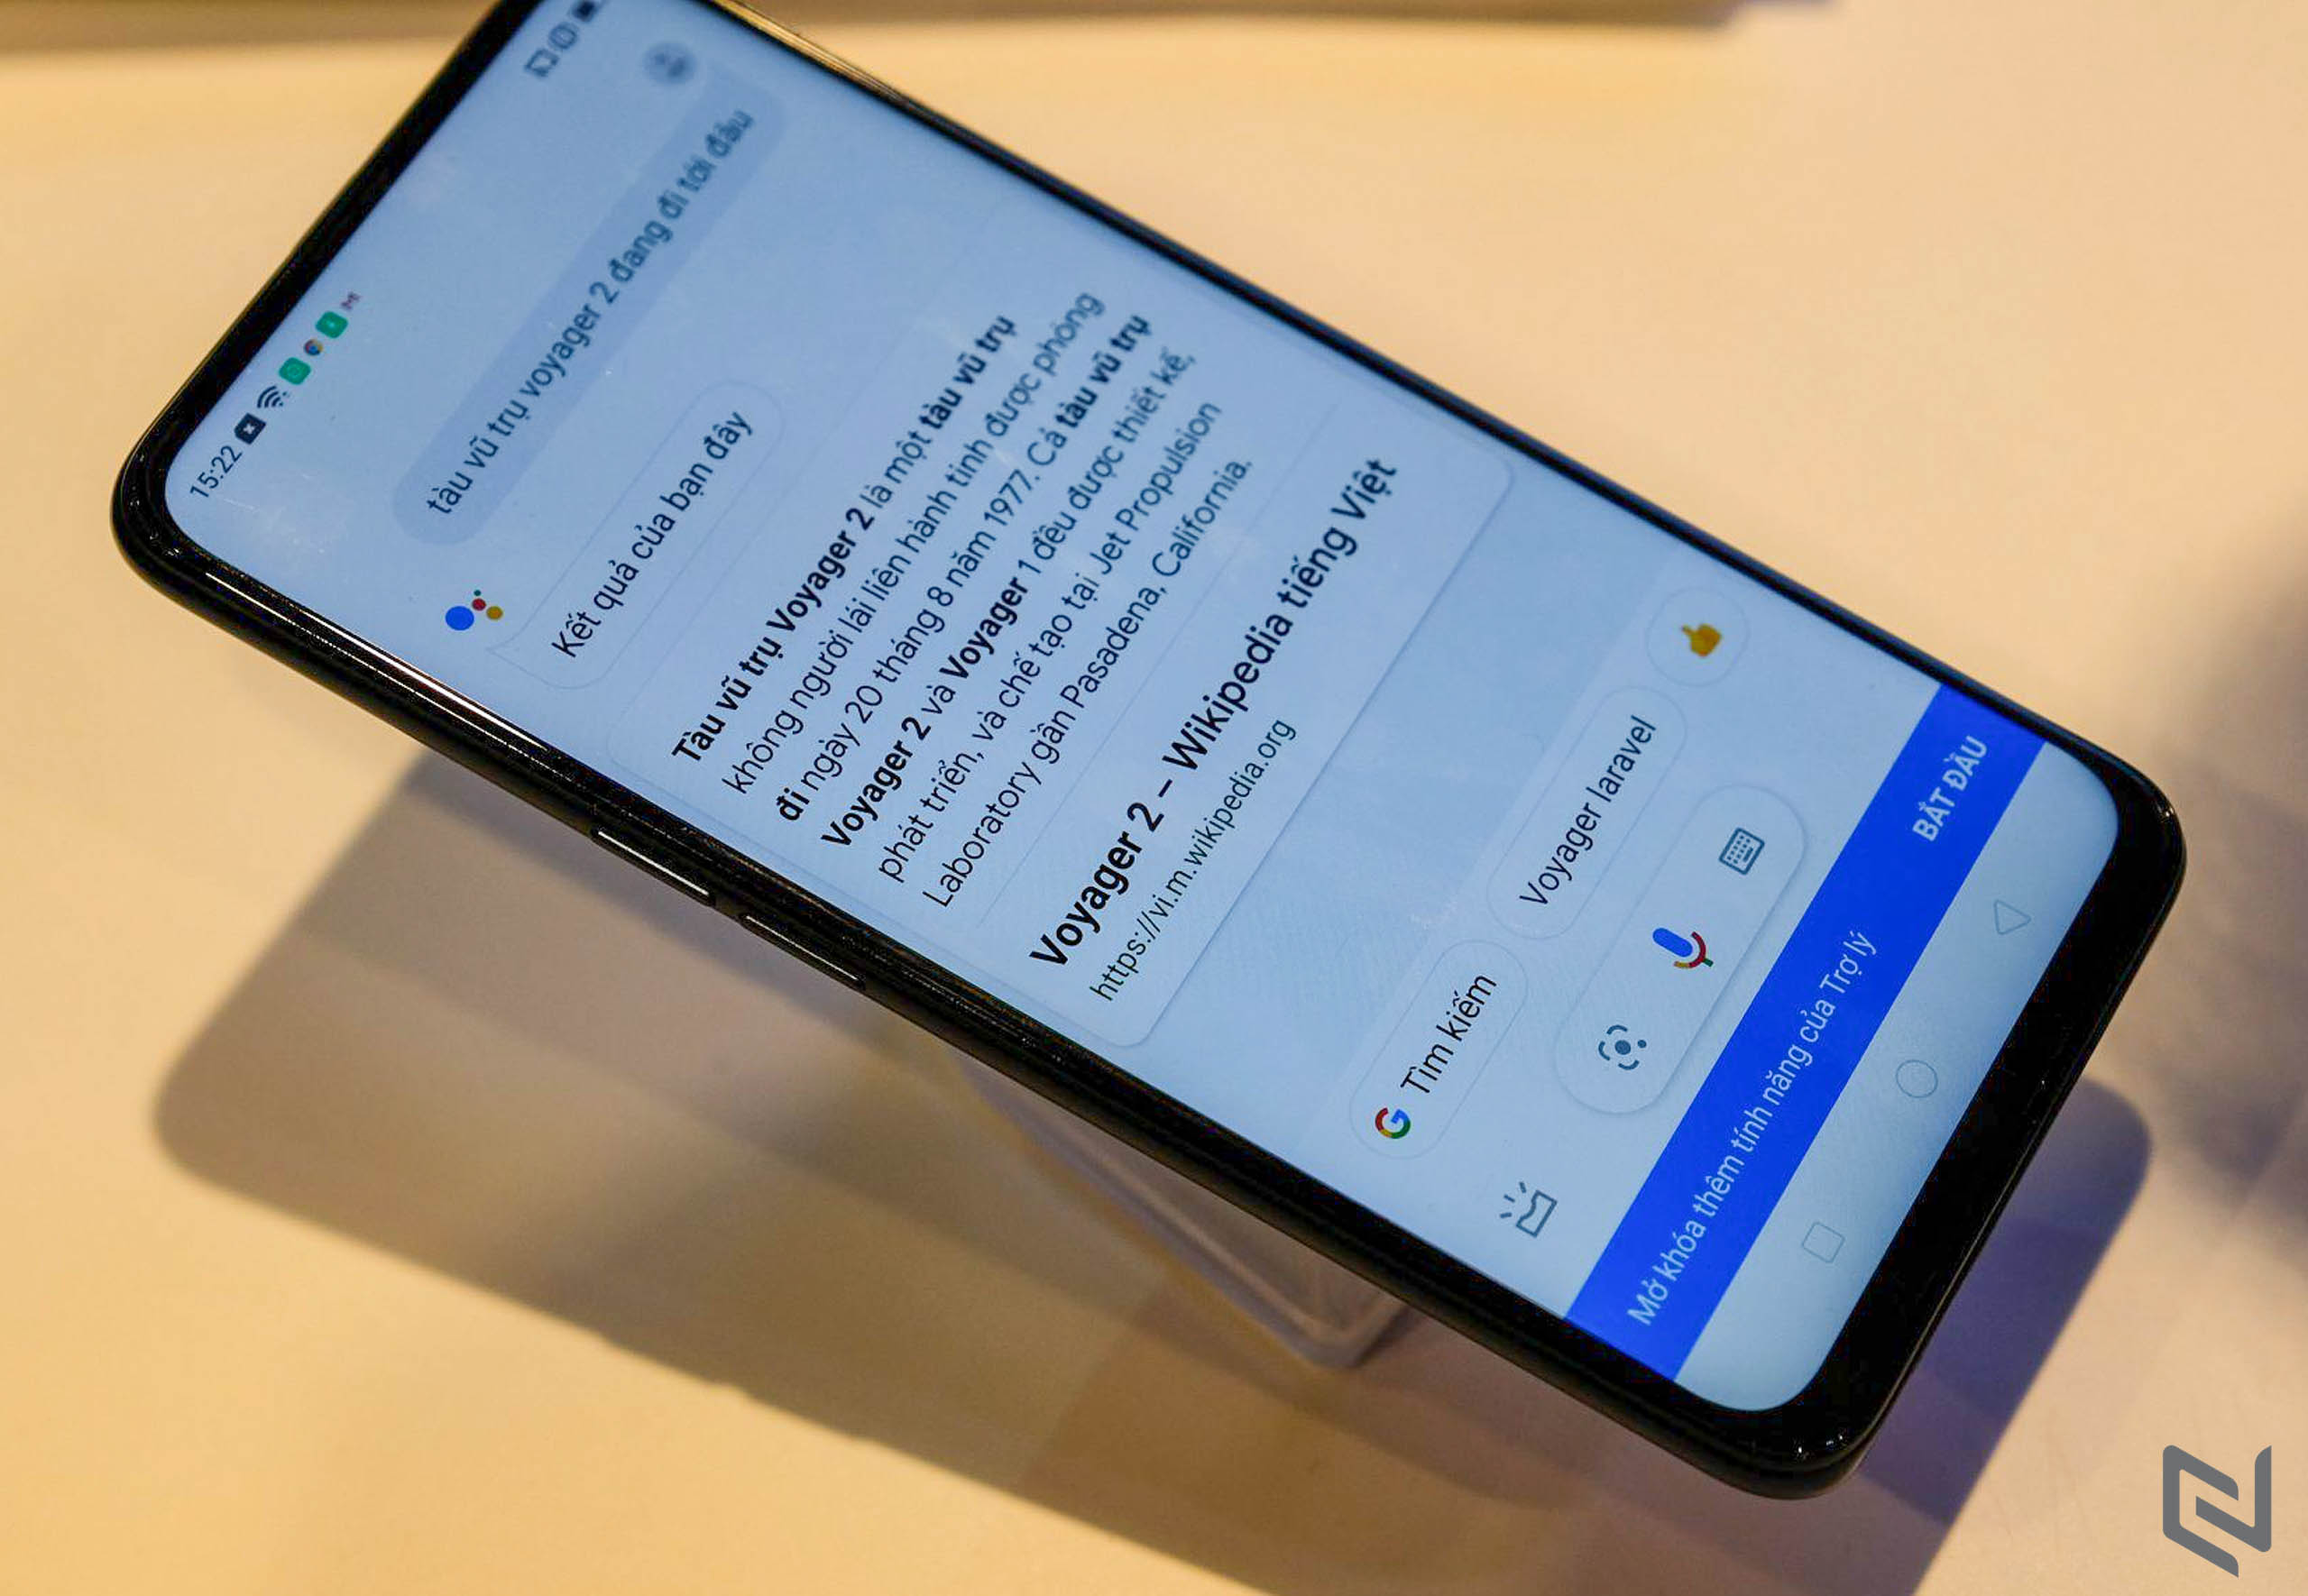 Google Assistant Tiếng Việt bắt đầu ra mắt từ hôm nay trên điện thoại Android 5.0+ (từ Lollipop trở lên) và sẽ sớm có trên iPhone (iOS 9.1 trở lên).